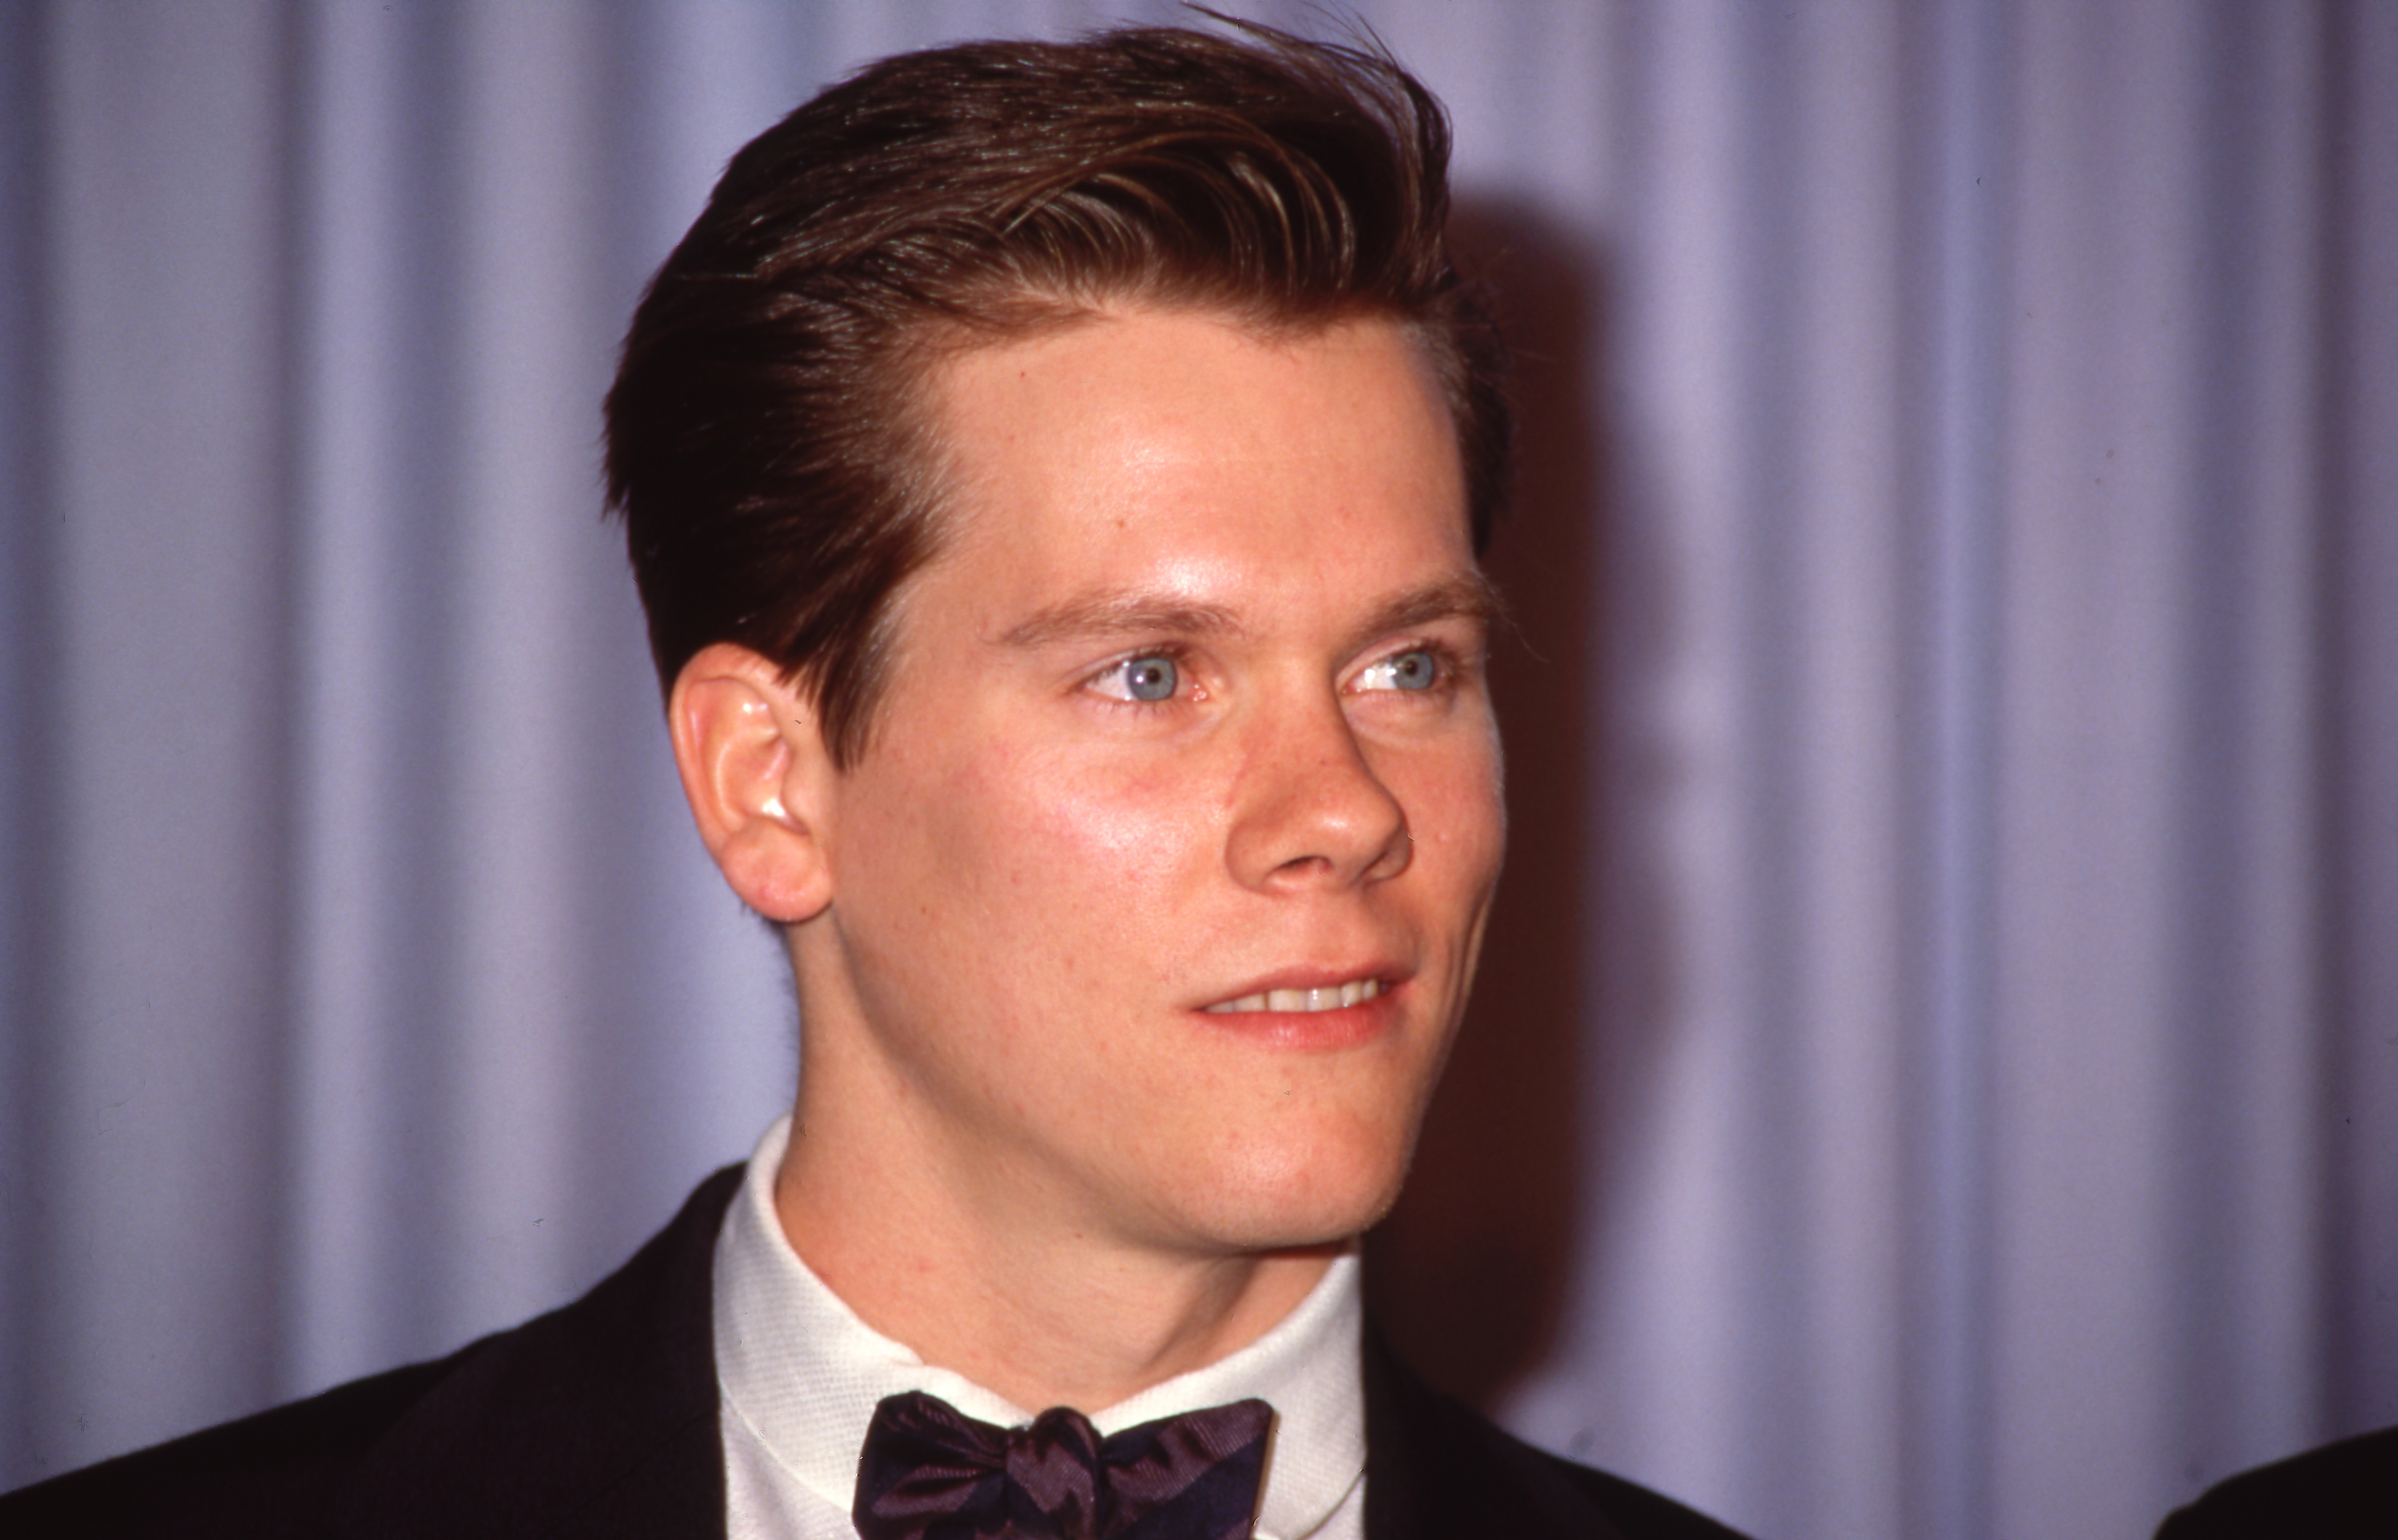 Le célèbre acteur lors d'un événement en 1984. | Source : Getty Images